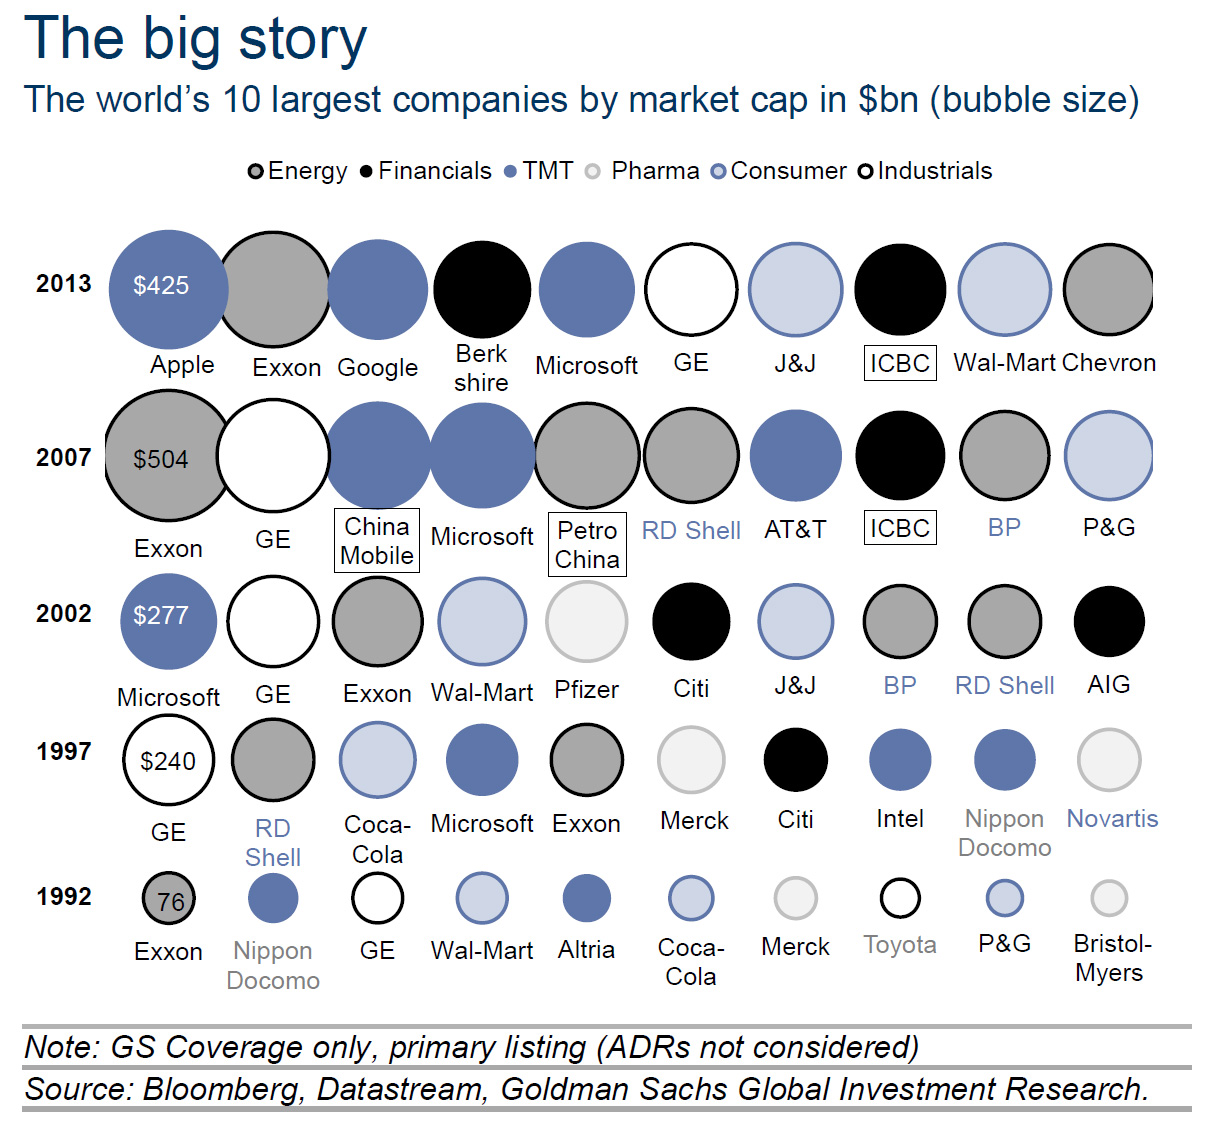 Οι 10 μεγαλύτερες εταιρείες του κόσμου, βάση κεφαλαιοποίησης (σε δις δολάρια). (*Πατήστε στην εικόνα για μεγέθυνση)